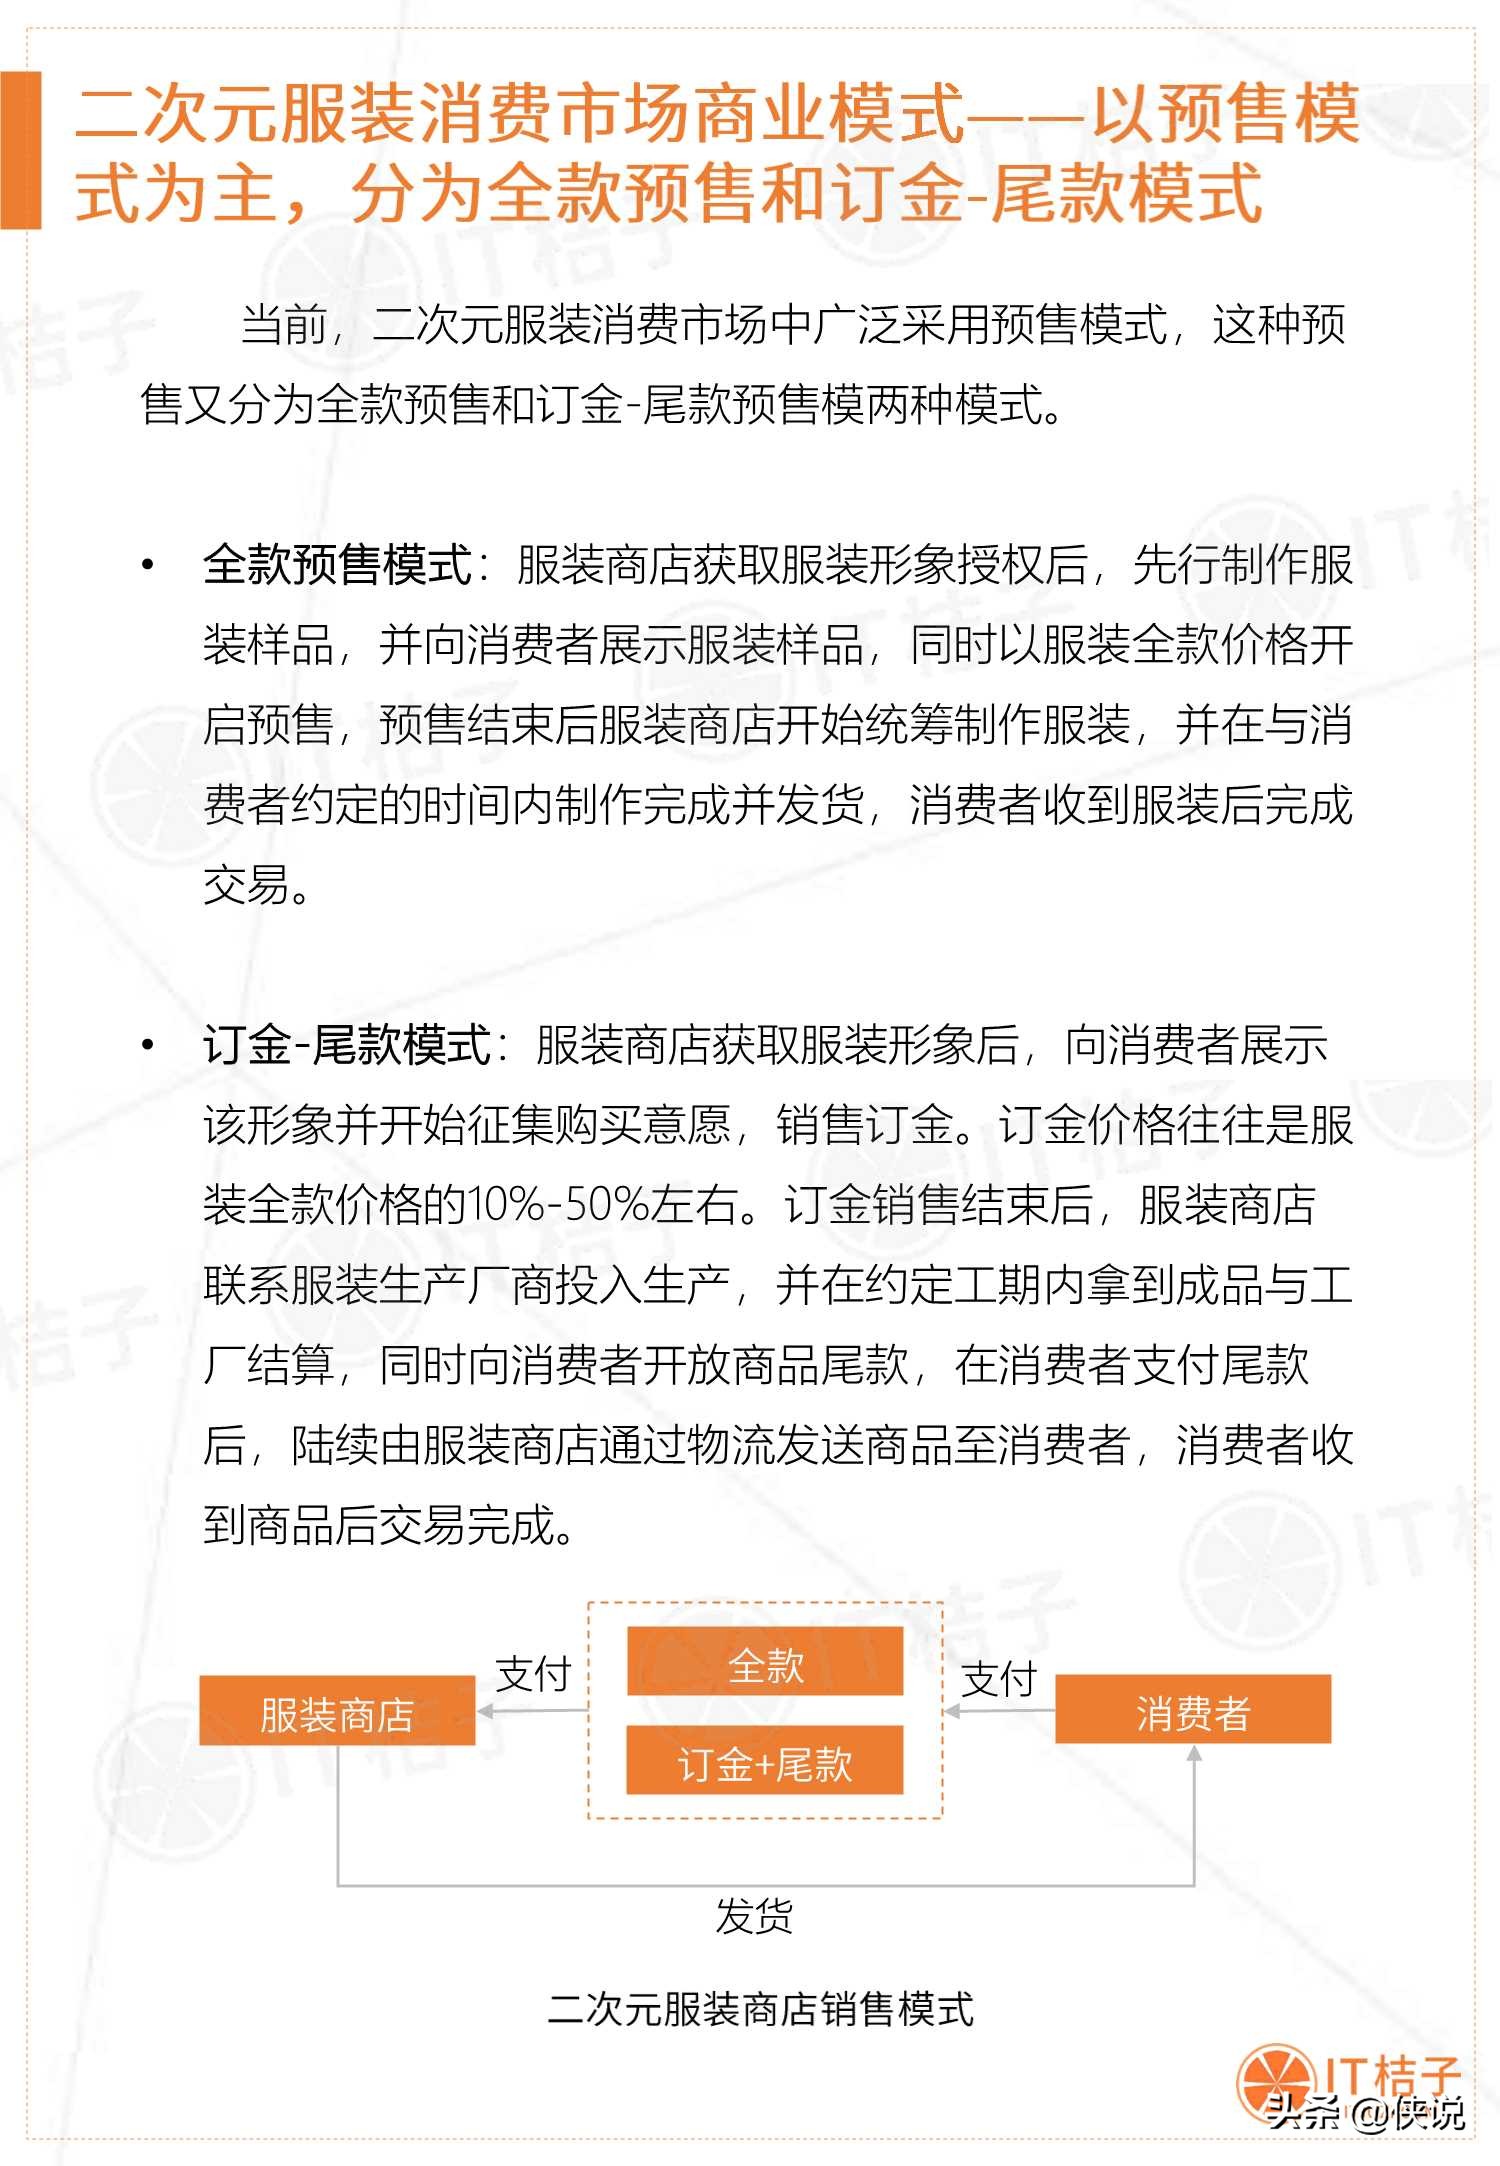 2019-2020年中国二次元服装消费市场分析报告